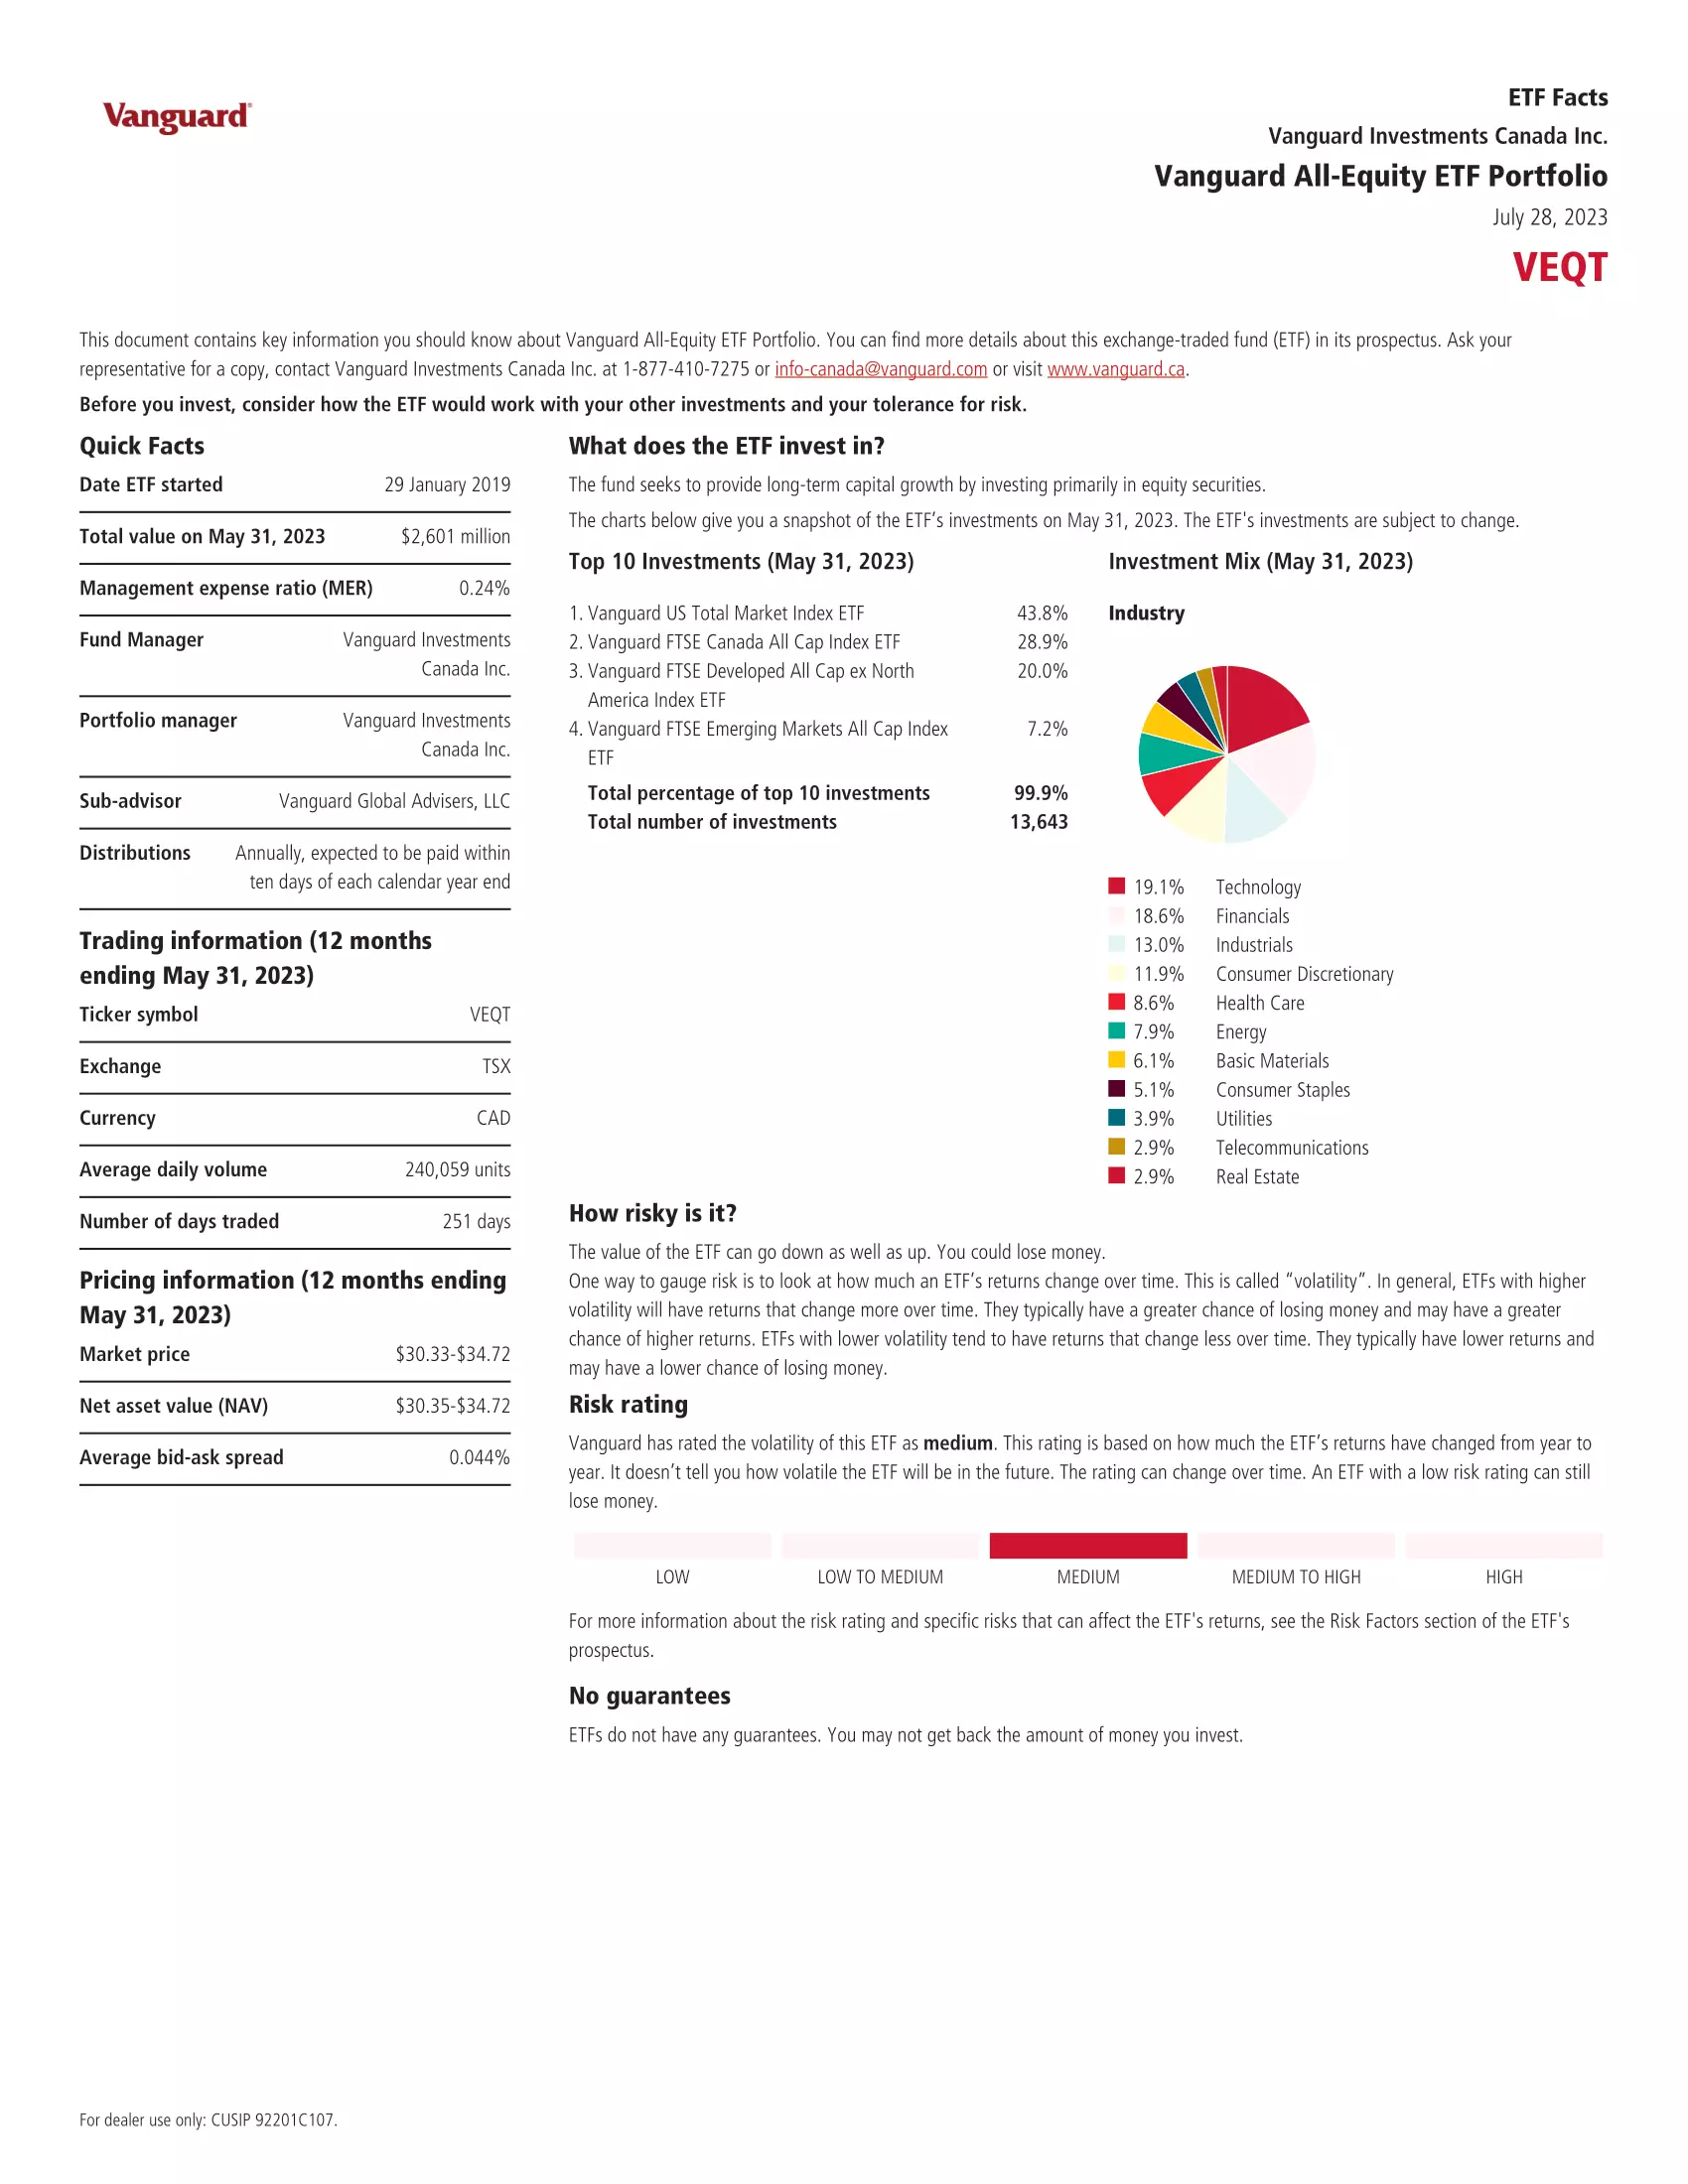 VEQT: Vanguard All-Equity ETF Portfolio